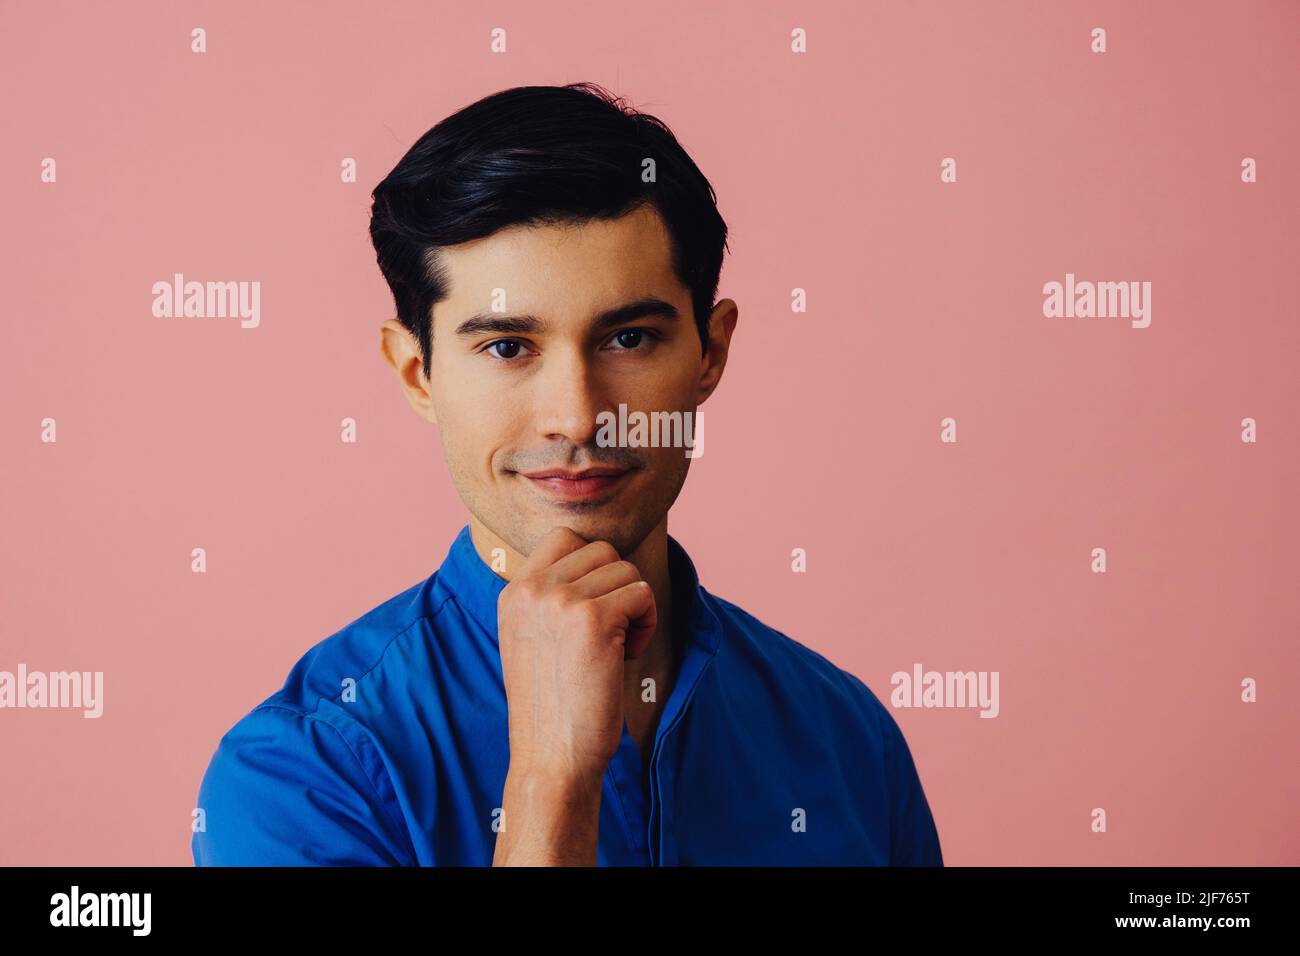 Headshot nachdenklicher, hübscher, junger, erwachsener Latino-Mann mit Hand am Kinn, schwarzen Haaren und blauem Hemd auf rosa Hintergrund, der auf das Kamerastudio schaut Stockfoto